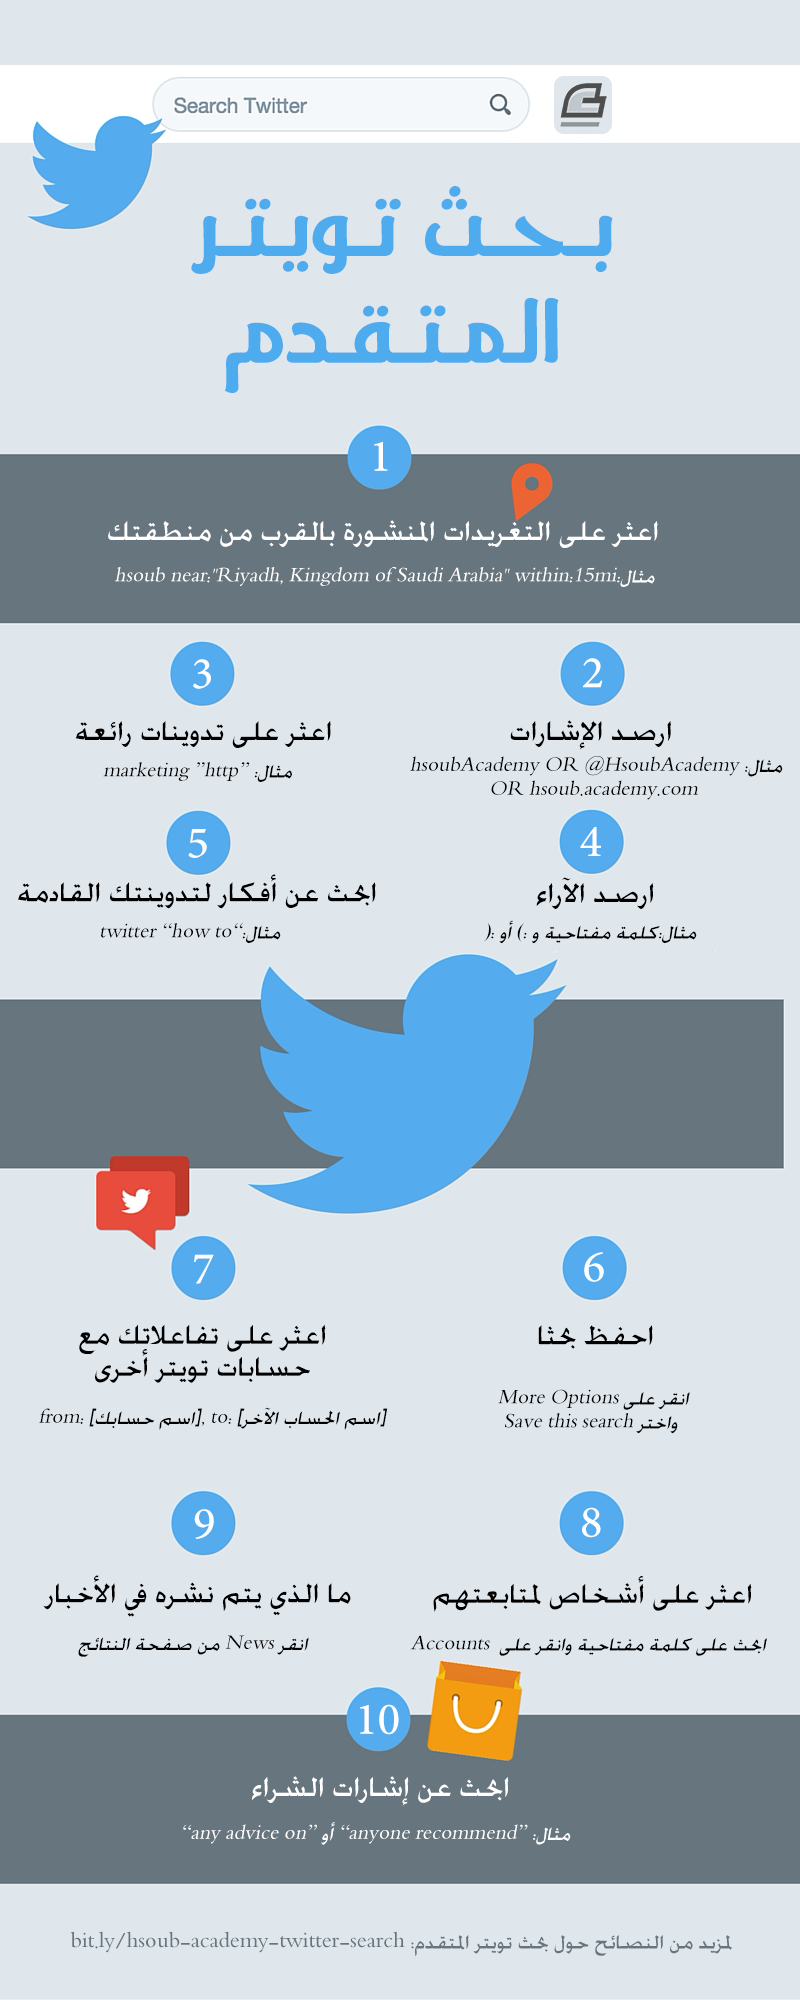 دليلك الوافي لبحث تويتر المتقدم 23 طريقة خفية لاستخدام البحث المتقدم للتسويق والمبيعات الشبكات الاجتماعية أكاديمية حسوب